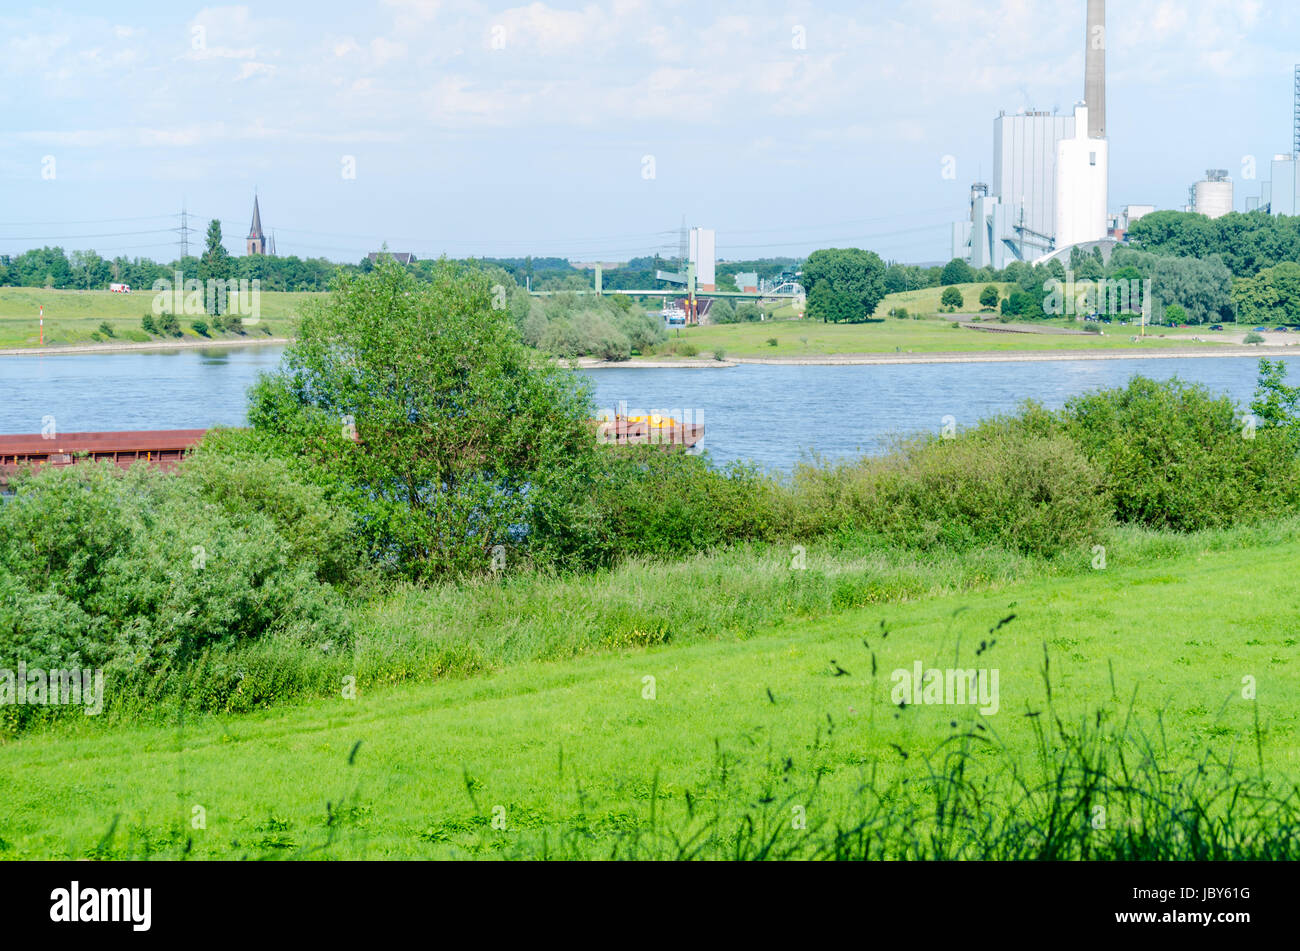 Schöne Rheinlandschaft mit Blick auf ein Kraftwerk in grüner Umgebung. Stock Photo